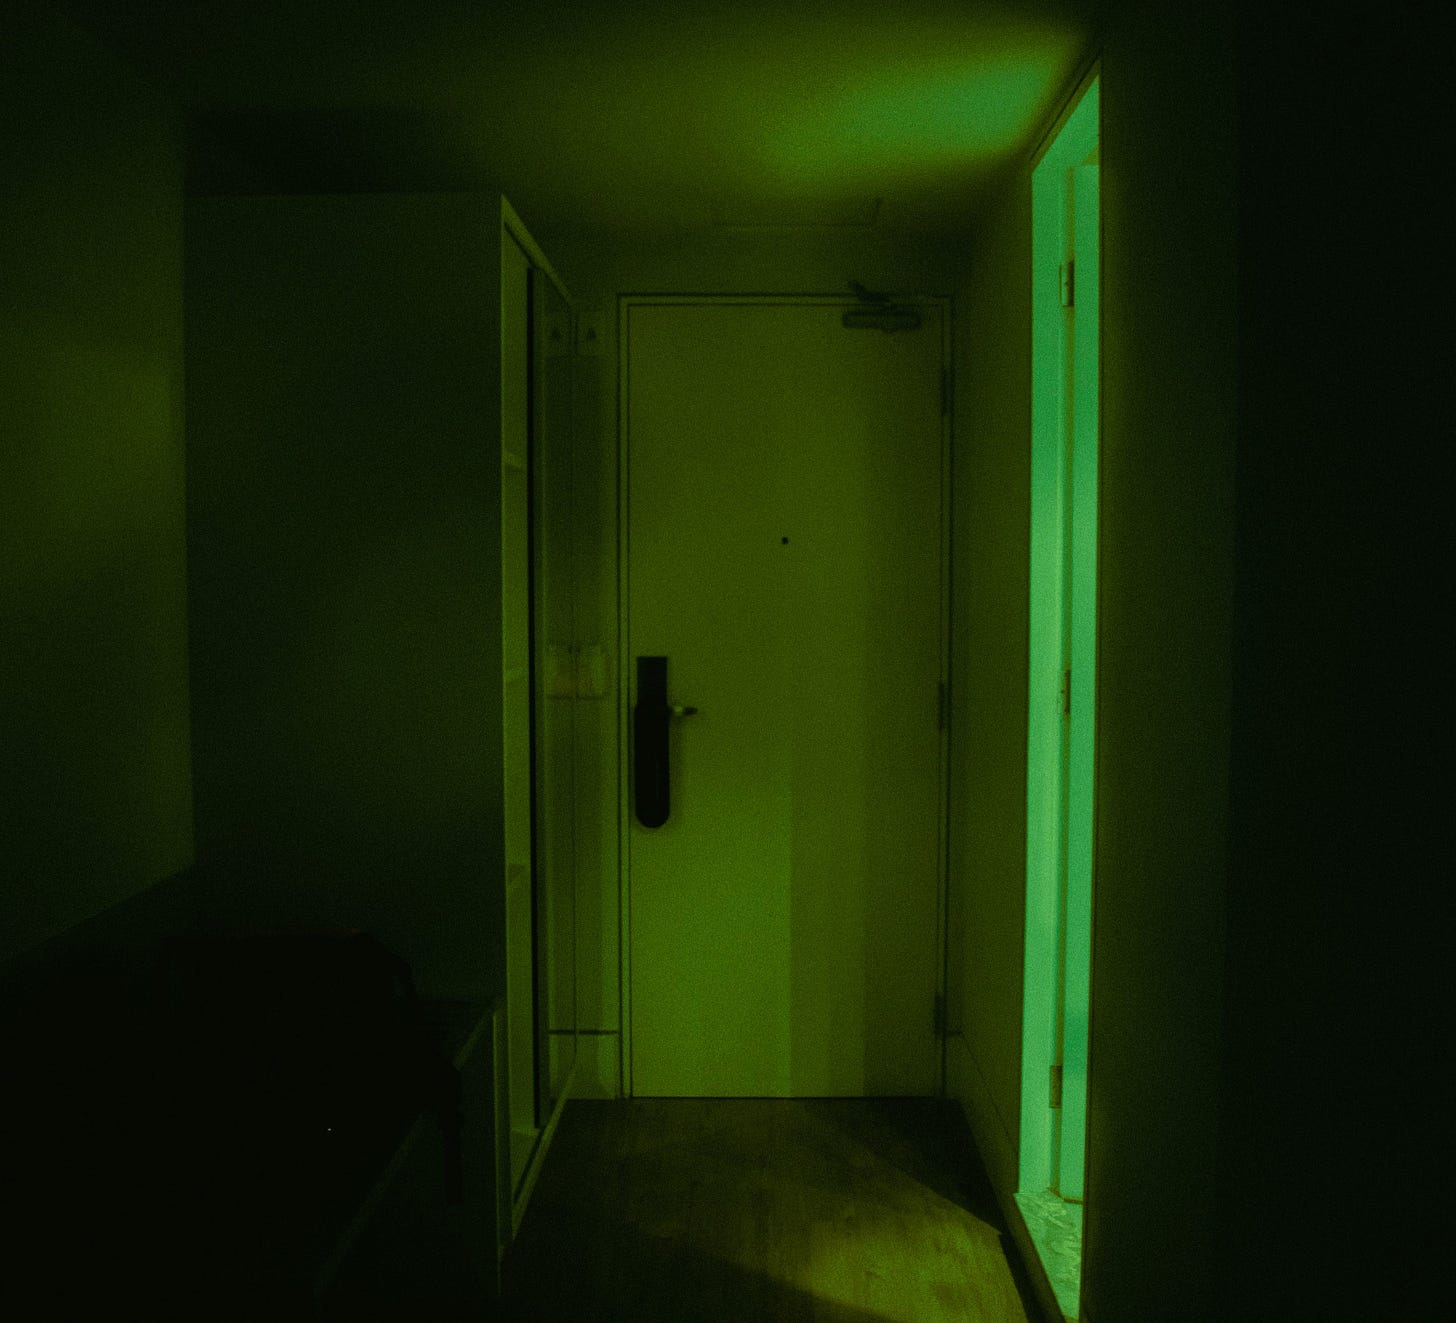 creepy green lit basement door down a dark corridor